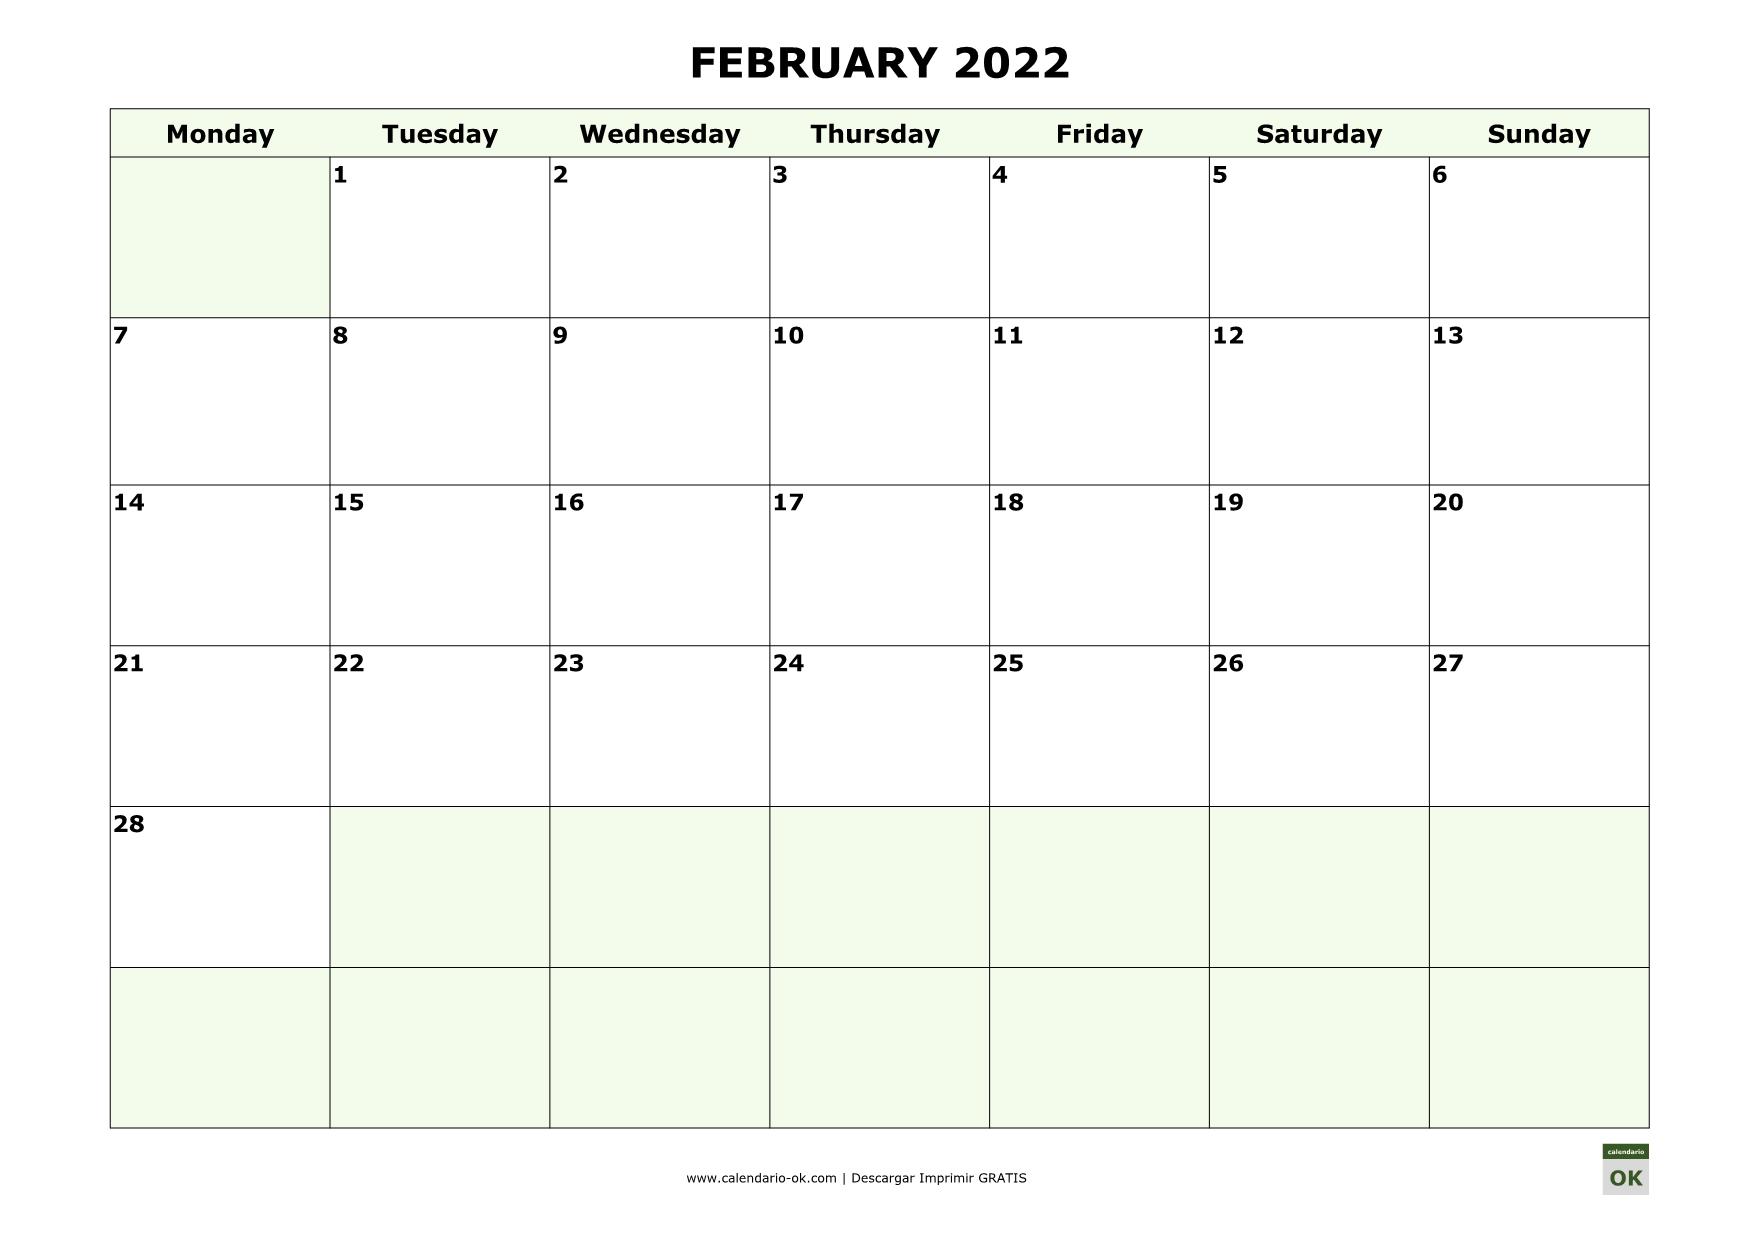 FEBRERO 2022 calendario en INGLES